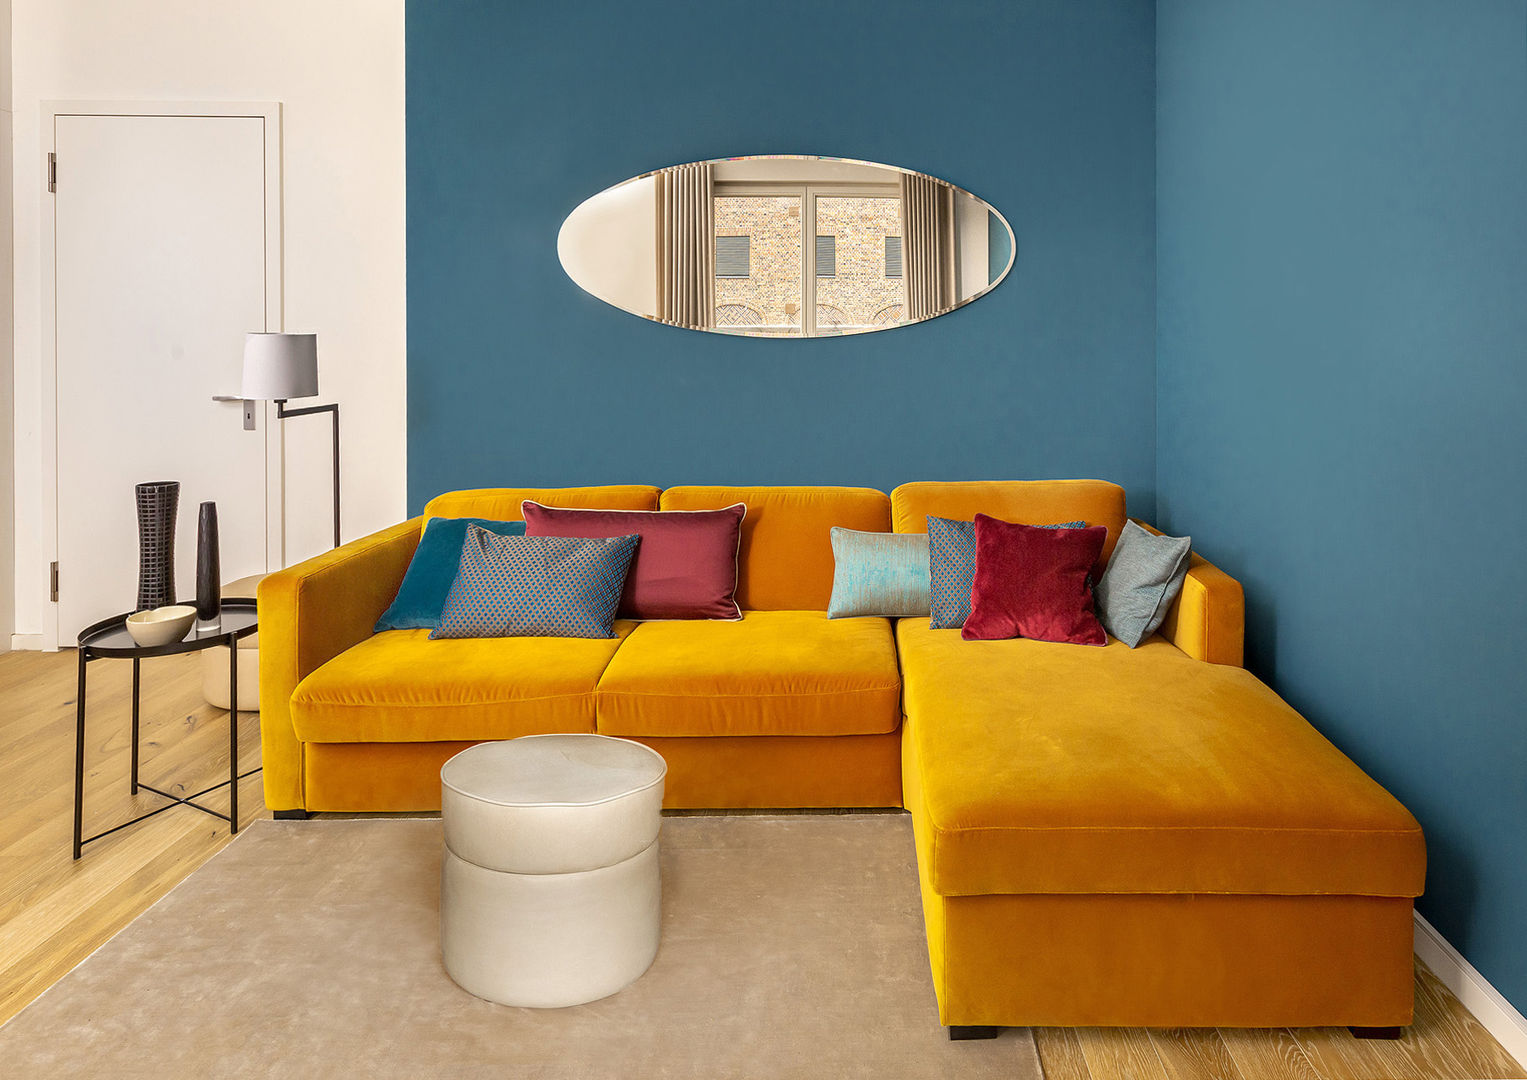 Wohnzimmer CONSCIOUS DESIGN - Interiors by Nicoletta Zarattini Moderne Wohnzimmer Holz Holznachbildung Sofa , orange, wand petrol, spiegel, oval